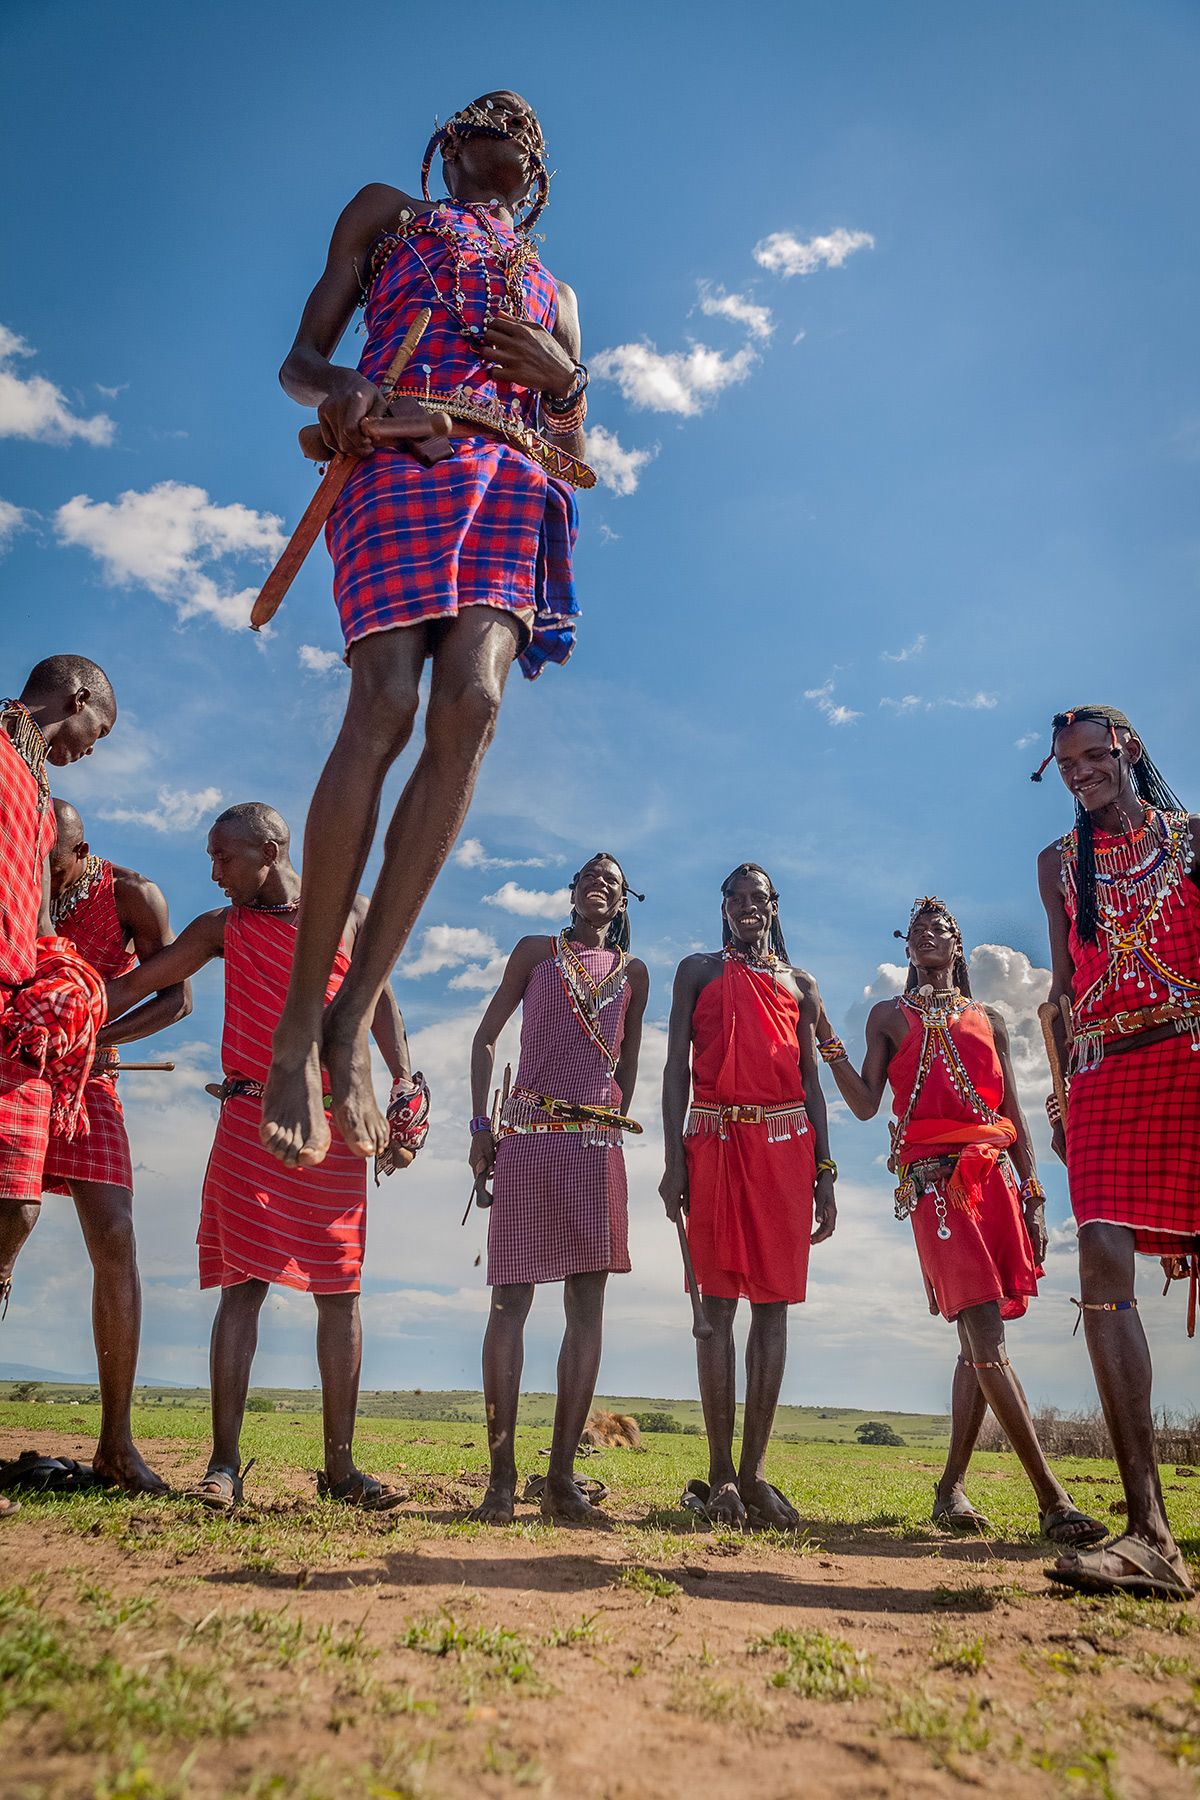 The Maasai Warrior : “Jumping Dance”